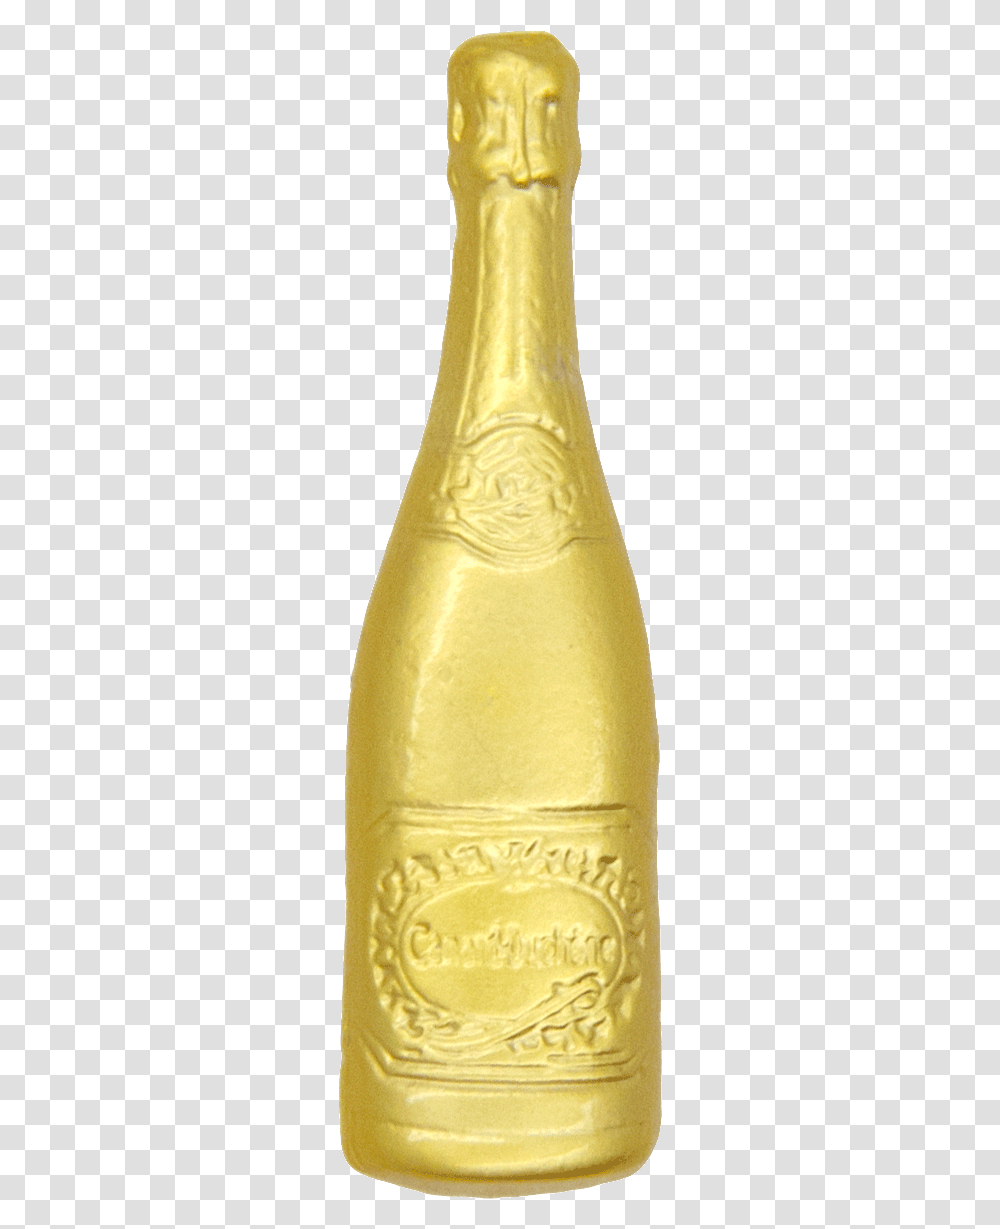 Wine Bottle Vector Gold Champagne Bottle, Plant, Food, Fruit, Beverage Transparent Png